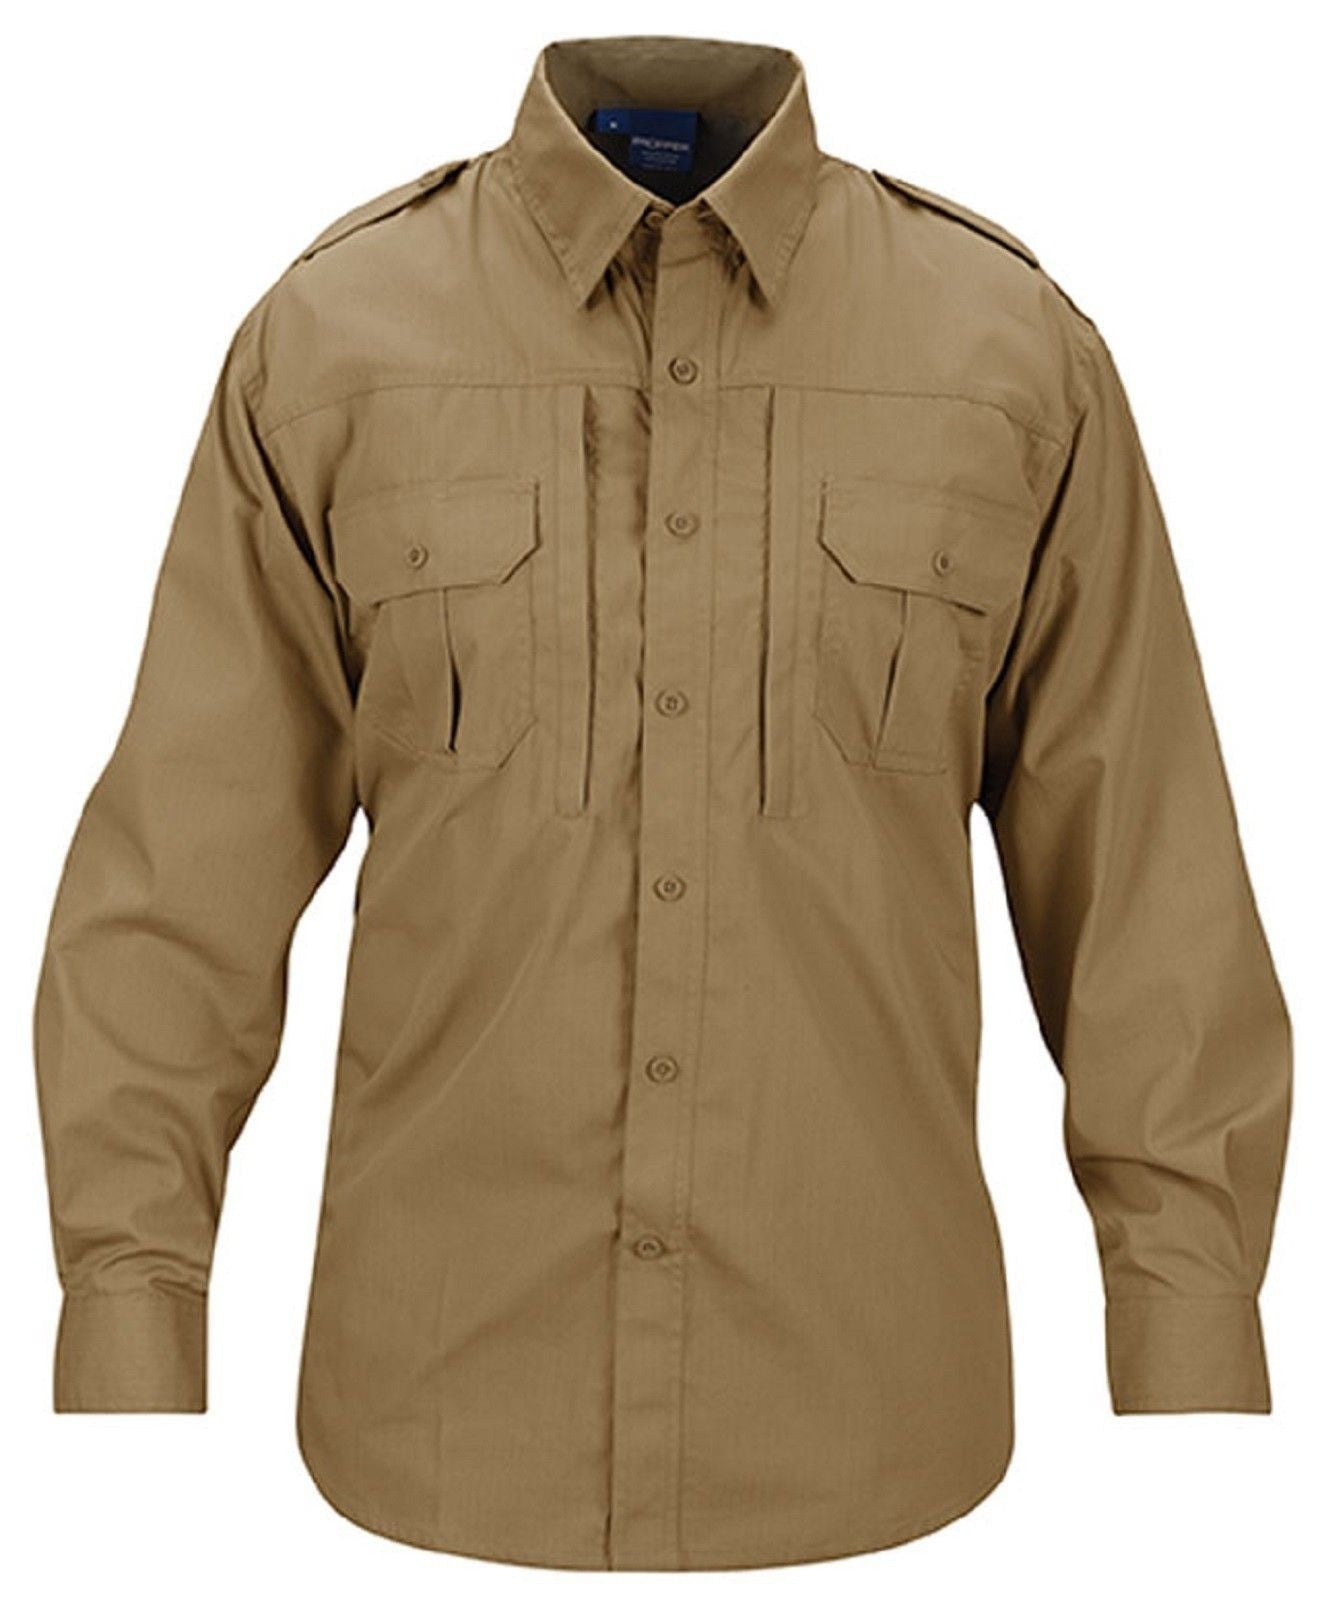 Propper Lightweight Tactical Shirt - Men's Long Sleeve Button Up ...